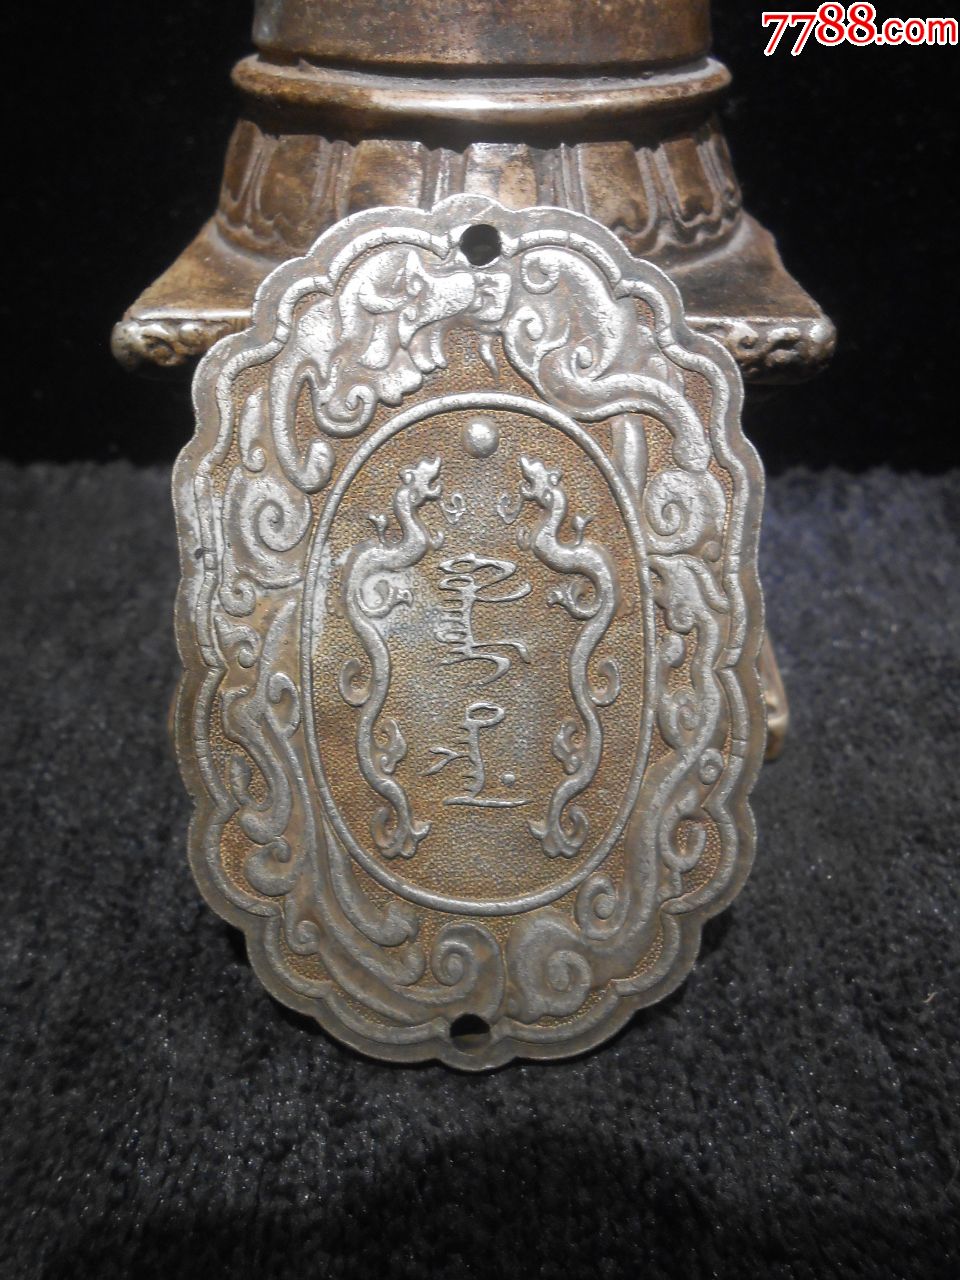 铜镀银银斋戒牌一枚,中国古代行斋戒礼时所置示警牌,图案雕刻双龙戏珠